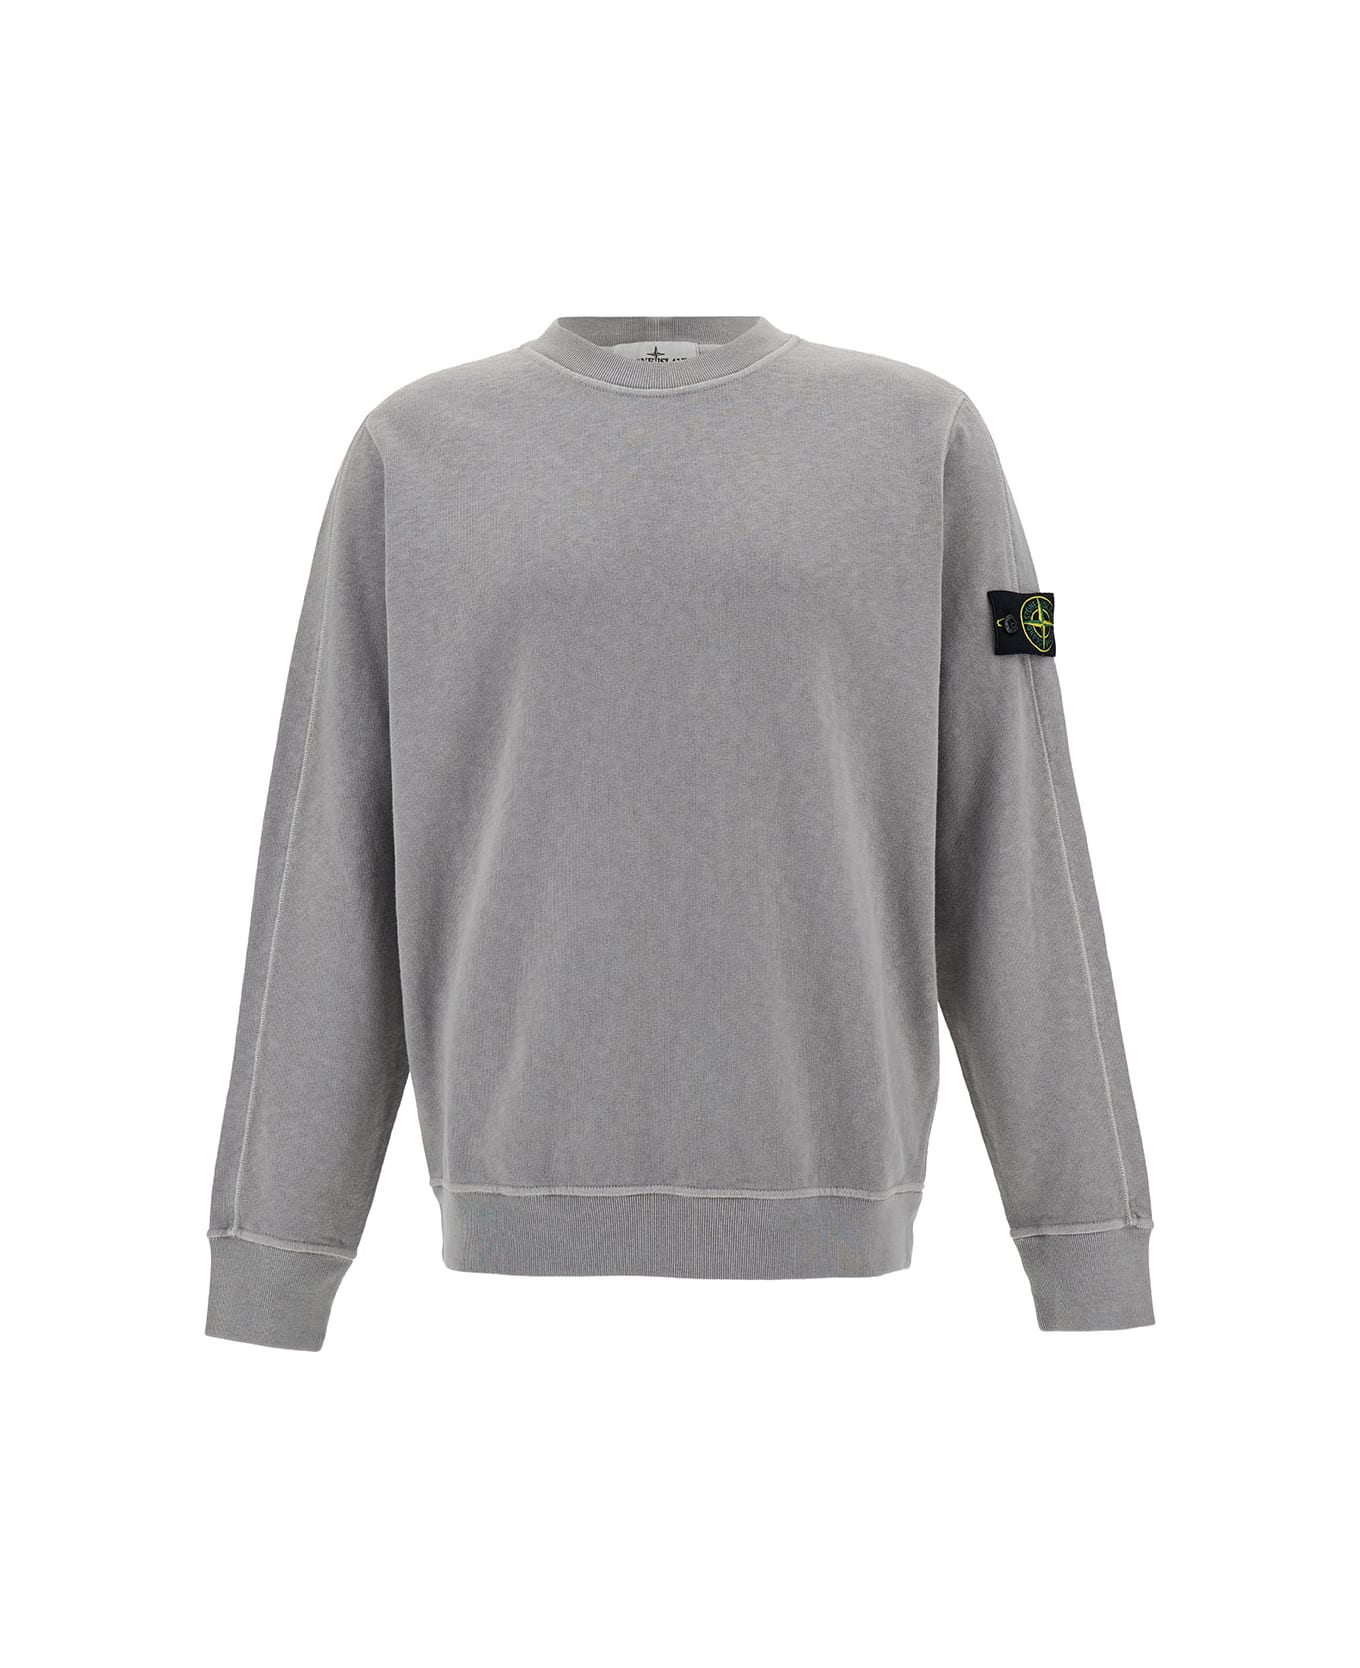 Stone Island Grey Crewneck Sweatshirt With Logo Patch In Cotton Man - Grey フリース